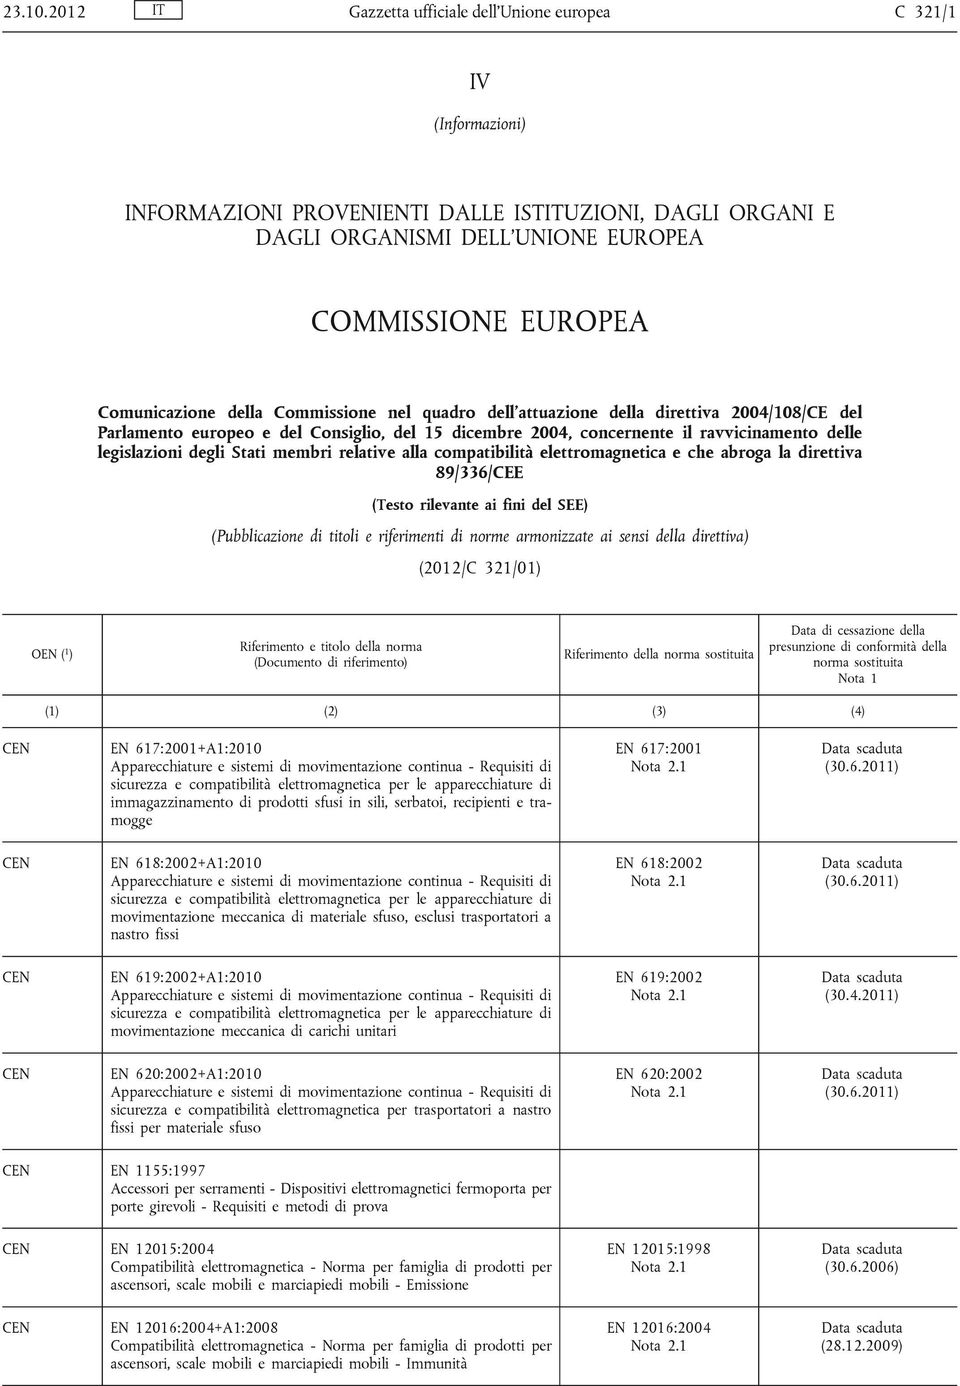 della Commissione nel quadro dell'attuazione della direttiva 2004/108/CE del Parlamento europeo e del Consiglio, del 15 dicembre 2004, concernente il ravvicinamento delle legislazioni degli Stati